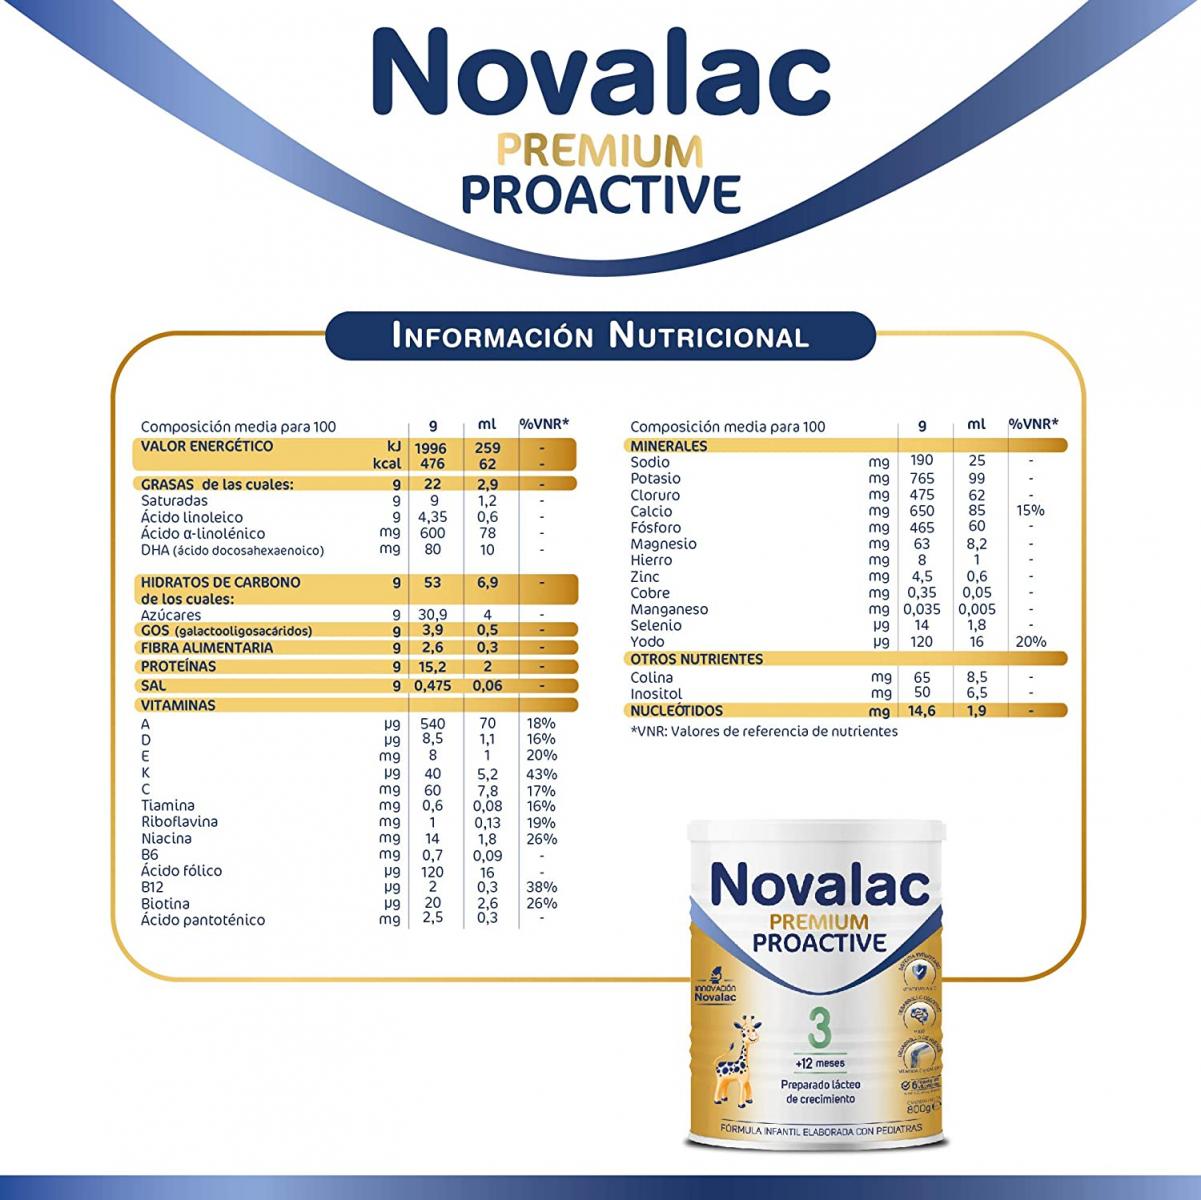 Novalac Premium 1 leche de inicio 800g Farmacia y Parafarmacia Online